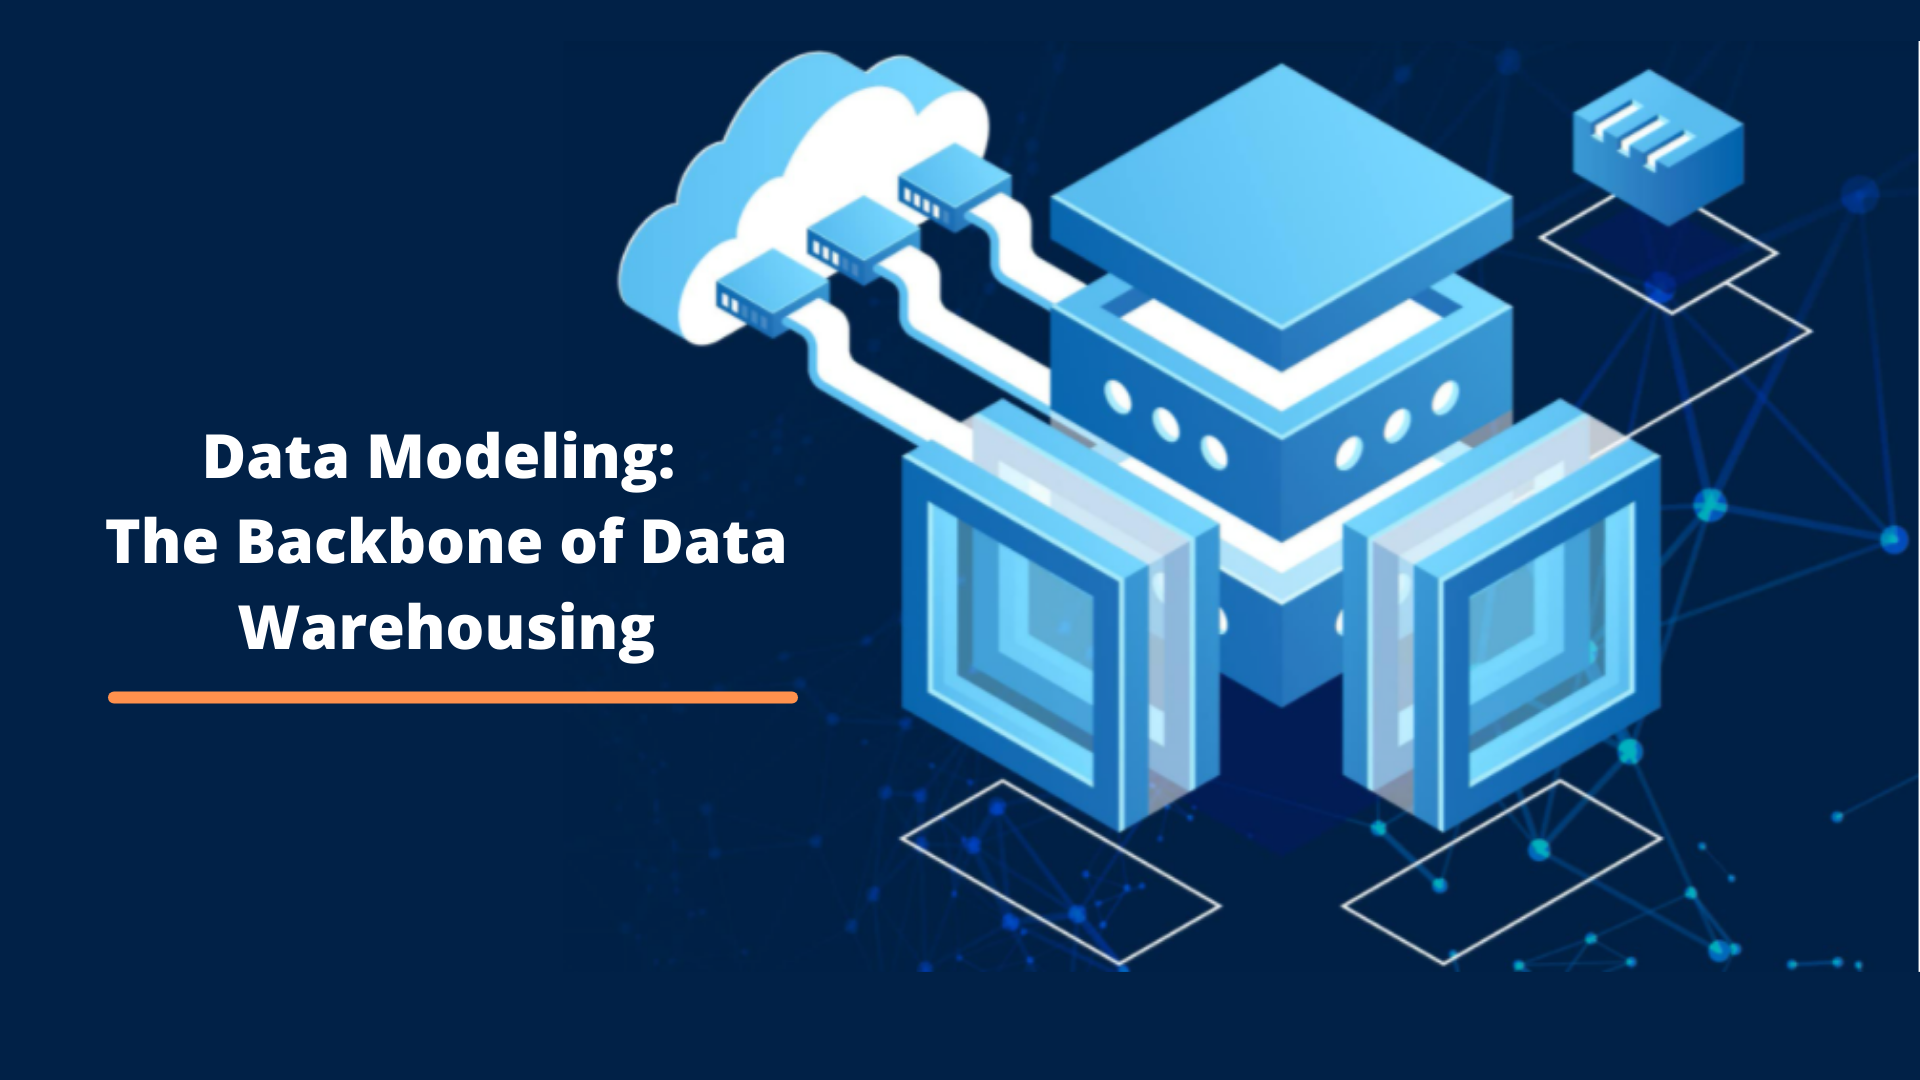 Impulsione o desenvolvimento de data warehouse com modelagem automatizada de dados corporativos